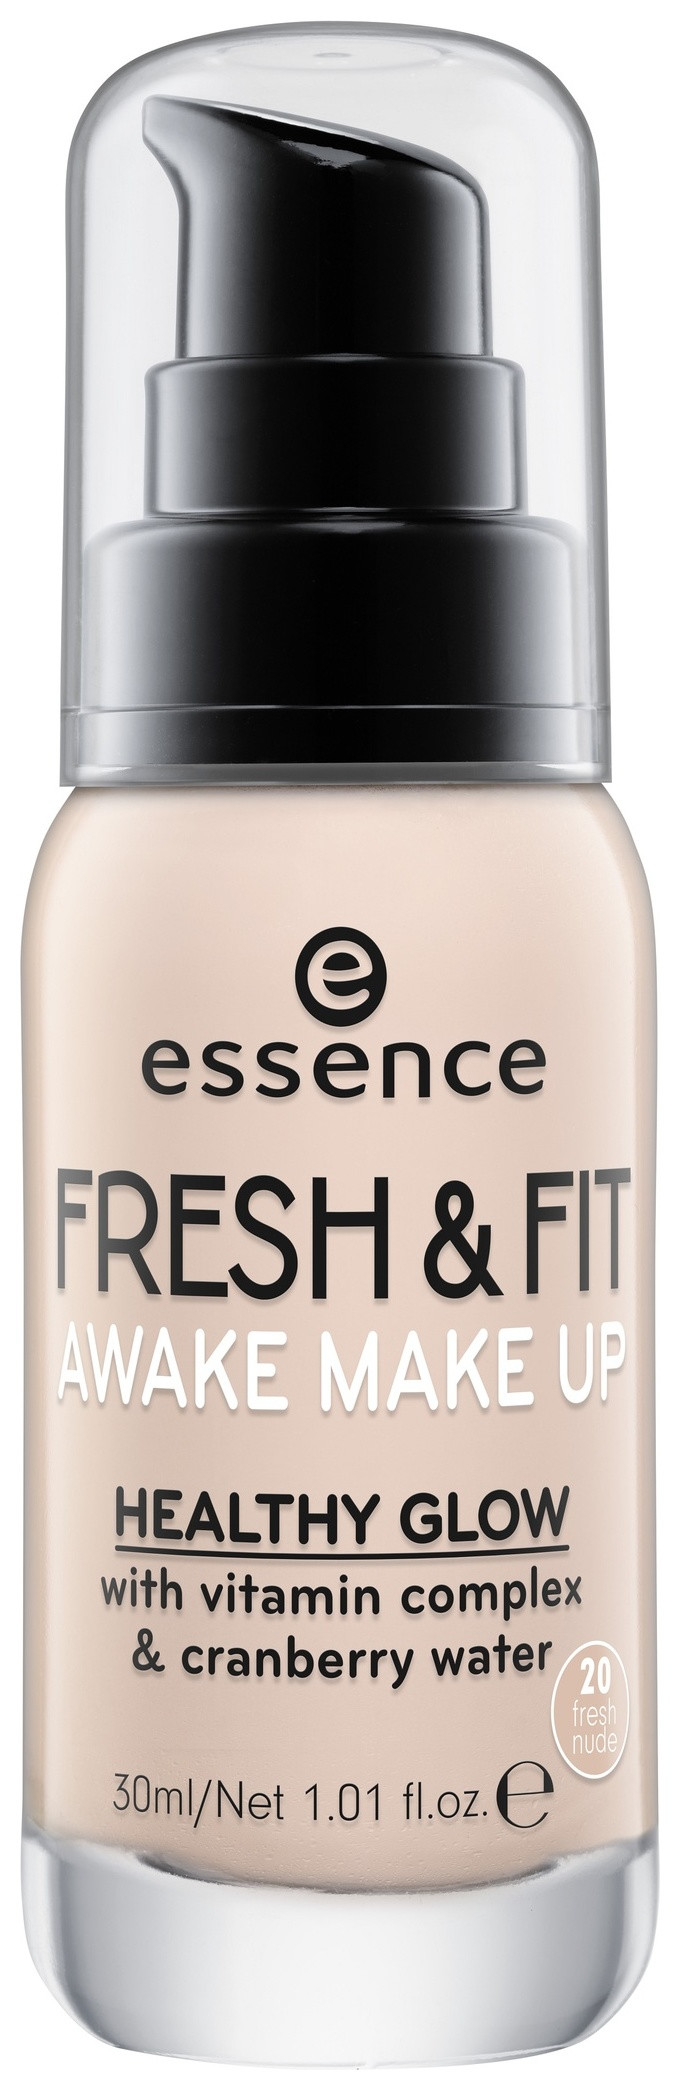 Тональная основа "Fresh & fit awake make up" отзывы